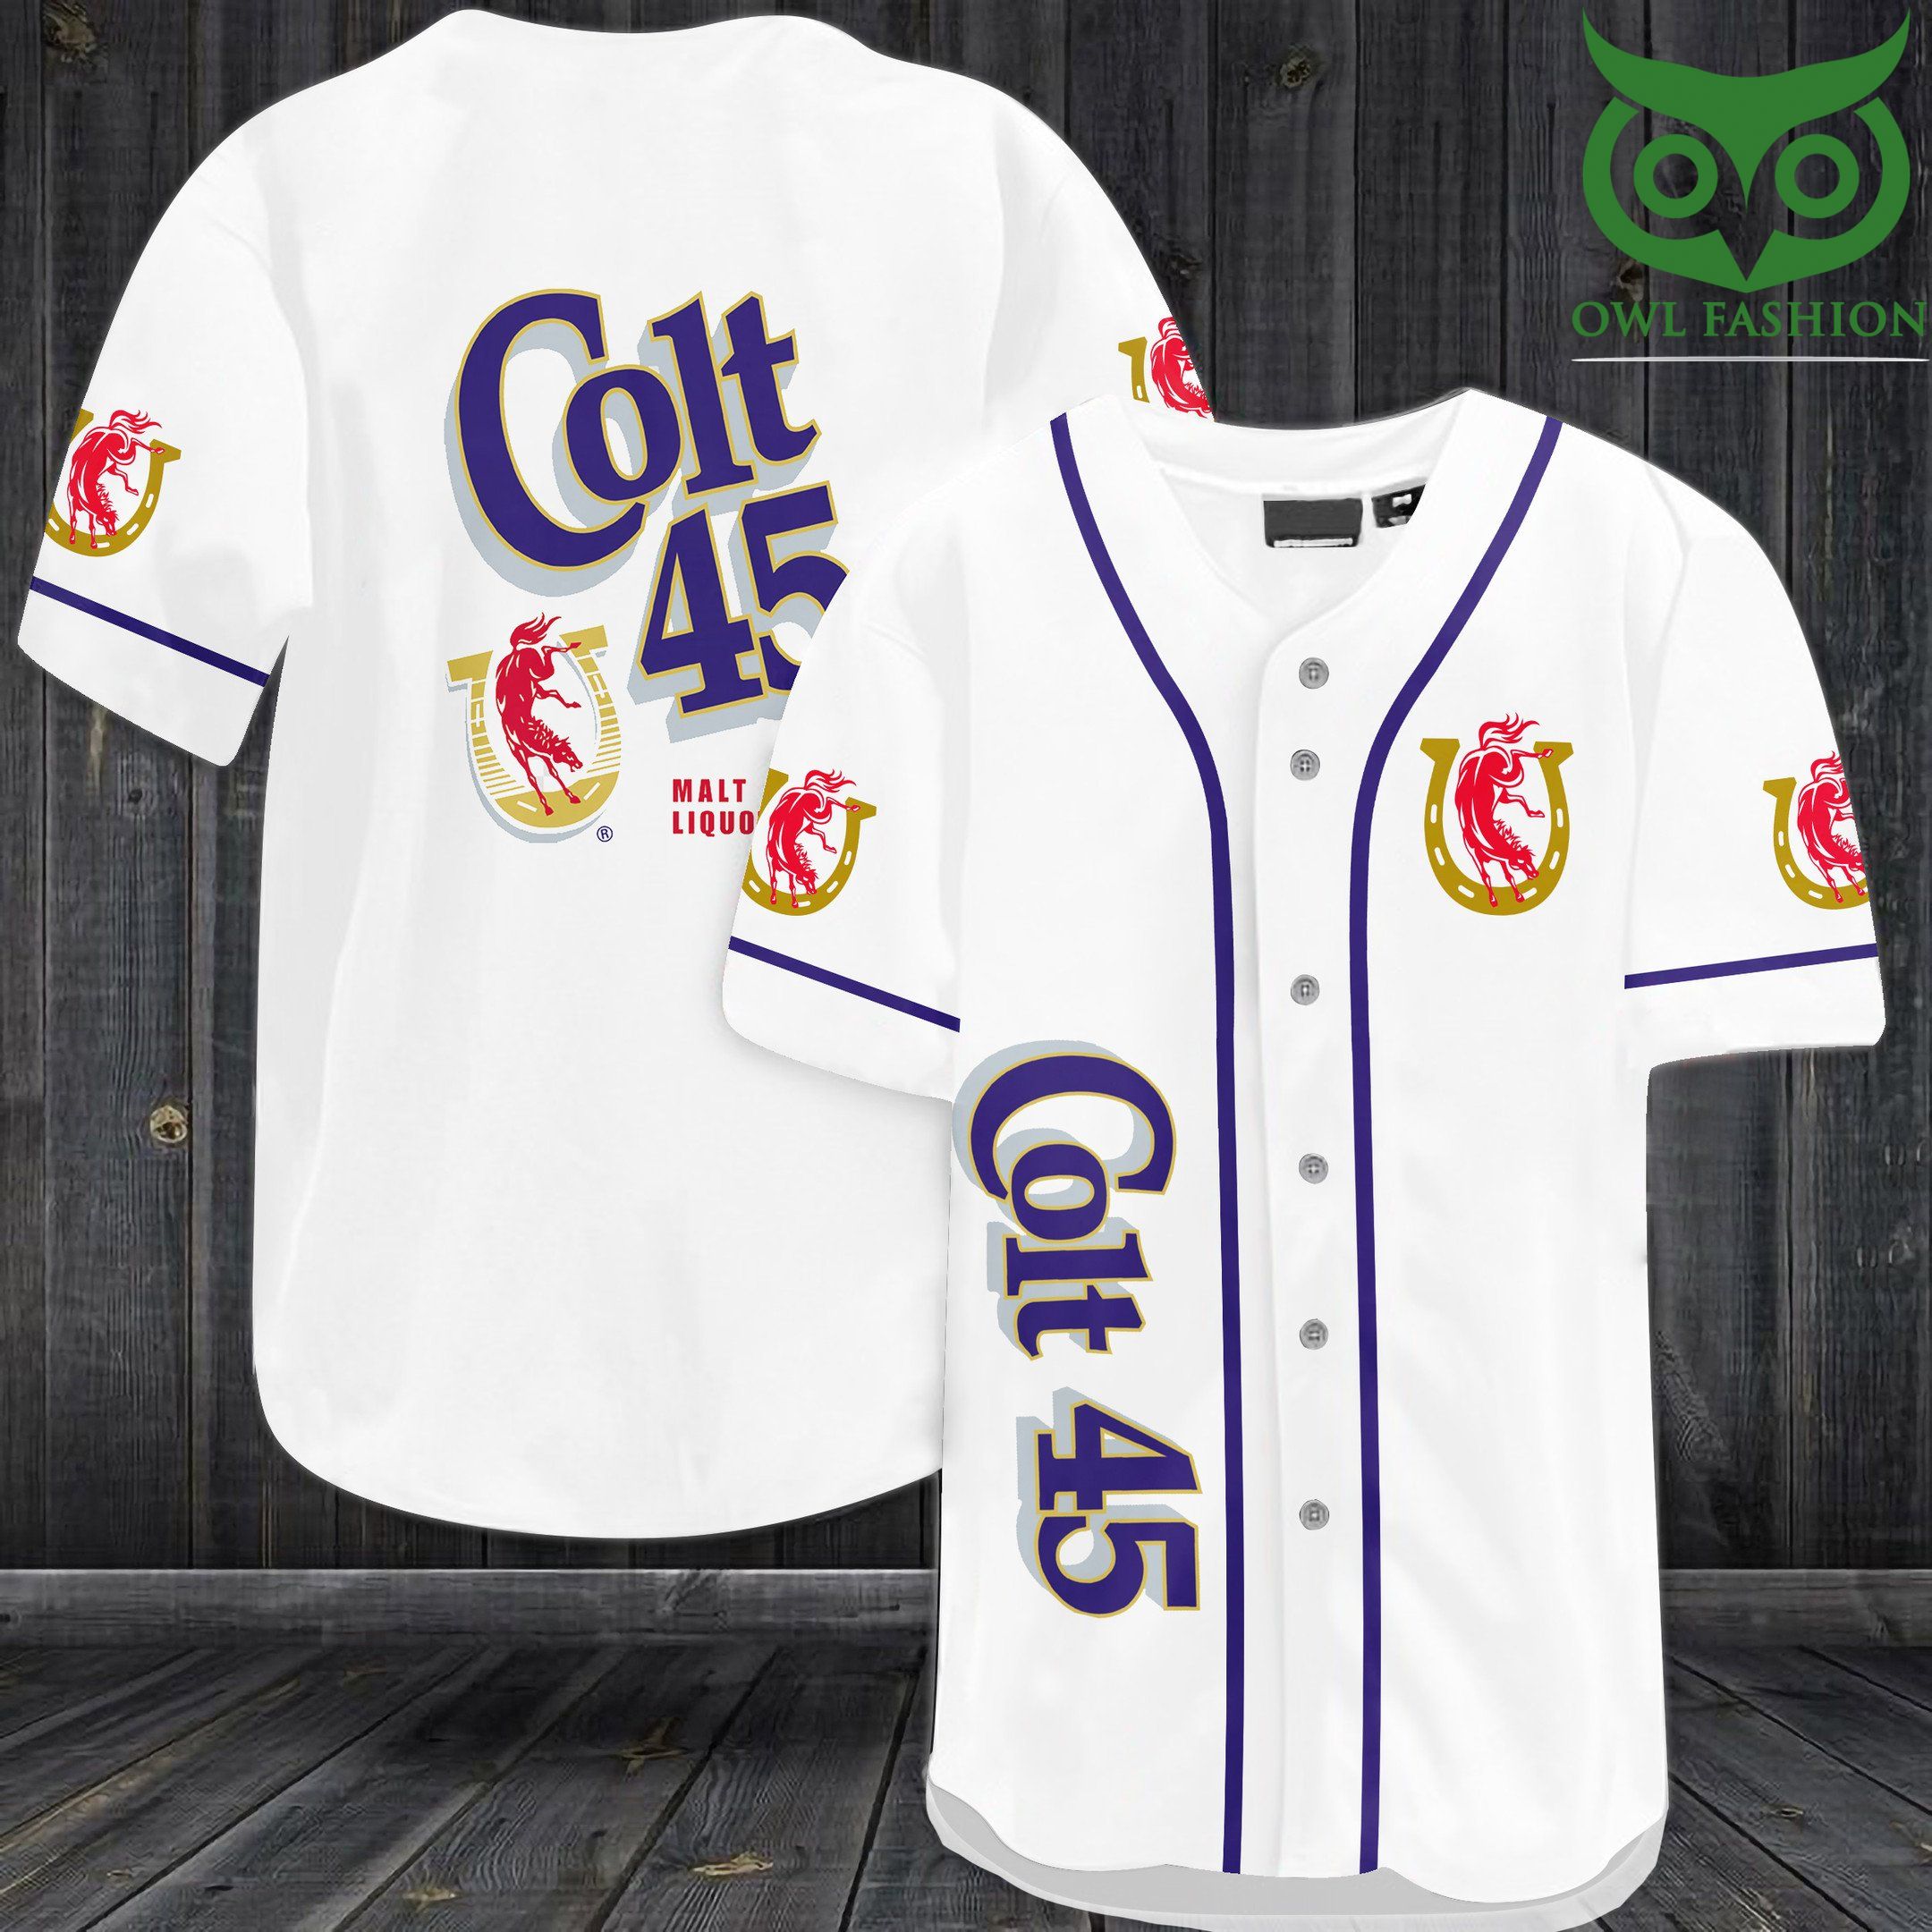 Colt 45 Malt Liquor Baseball Jersey Shirt